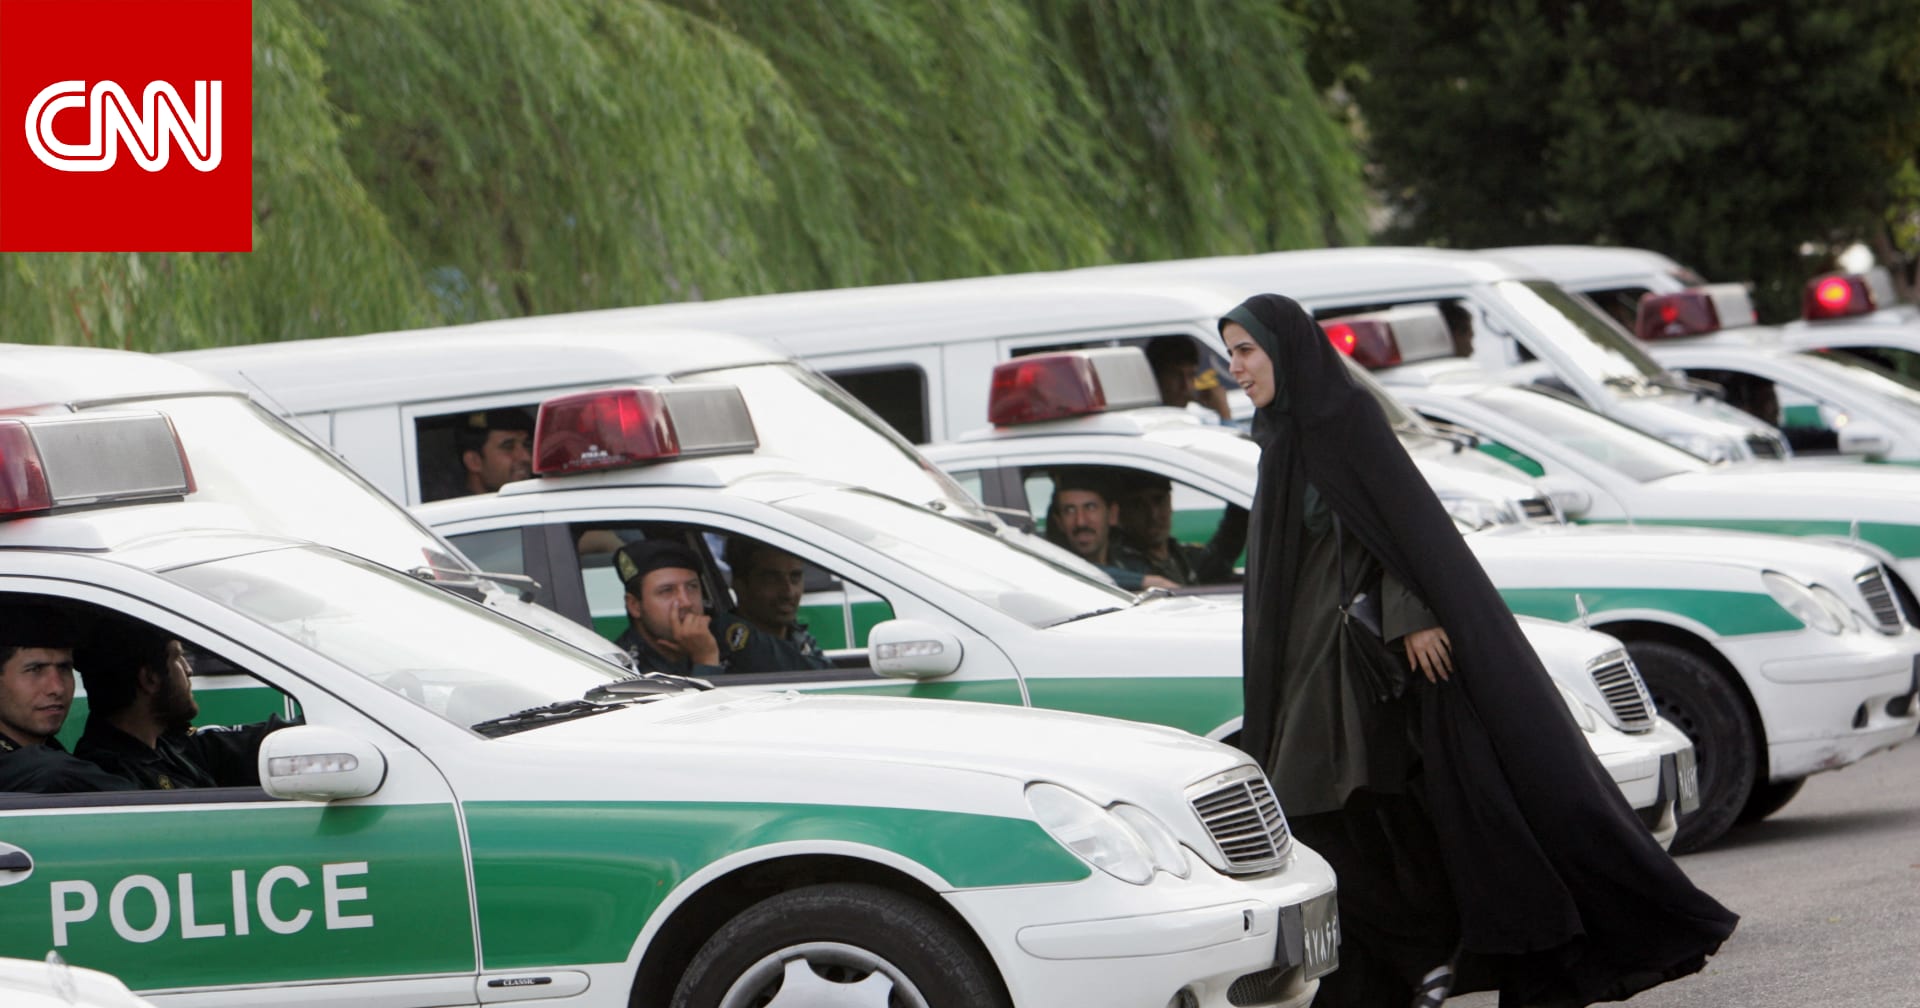 "بتهمة الحرابة".. إيران تعلن إعدام 4 أشخاص وتزعم علاقتهم بالموساد